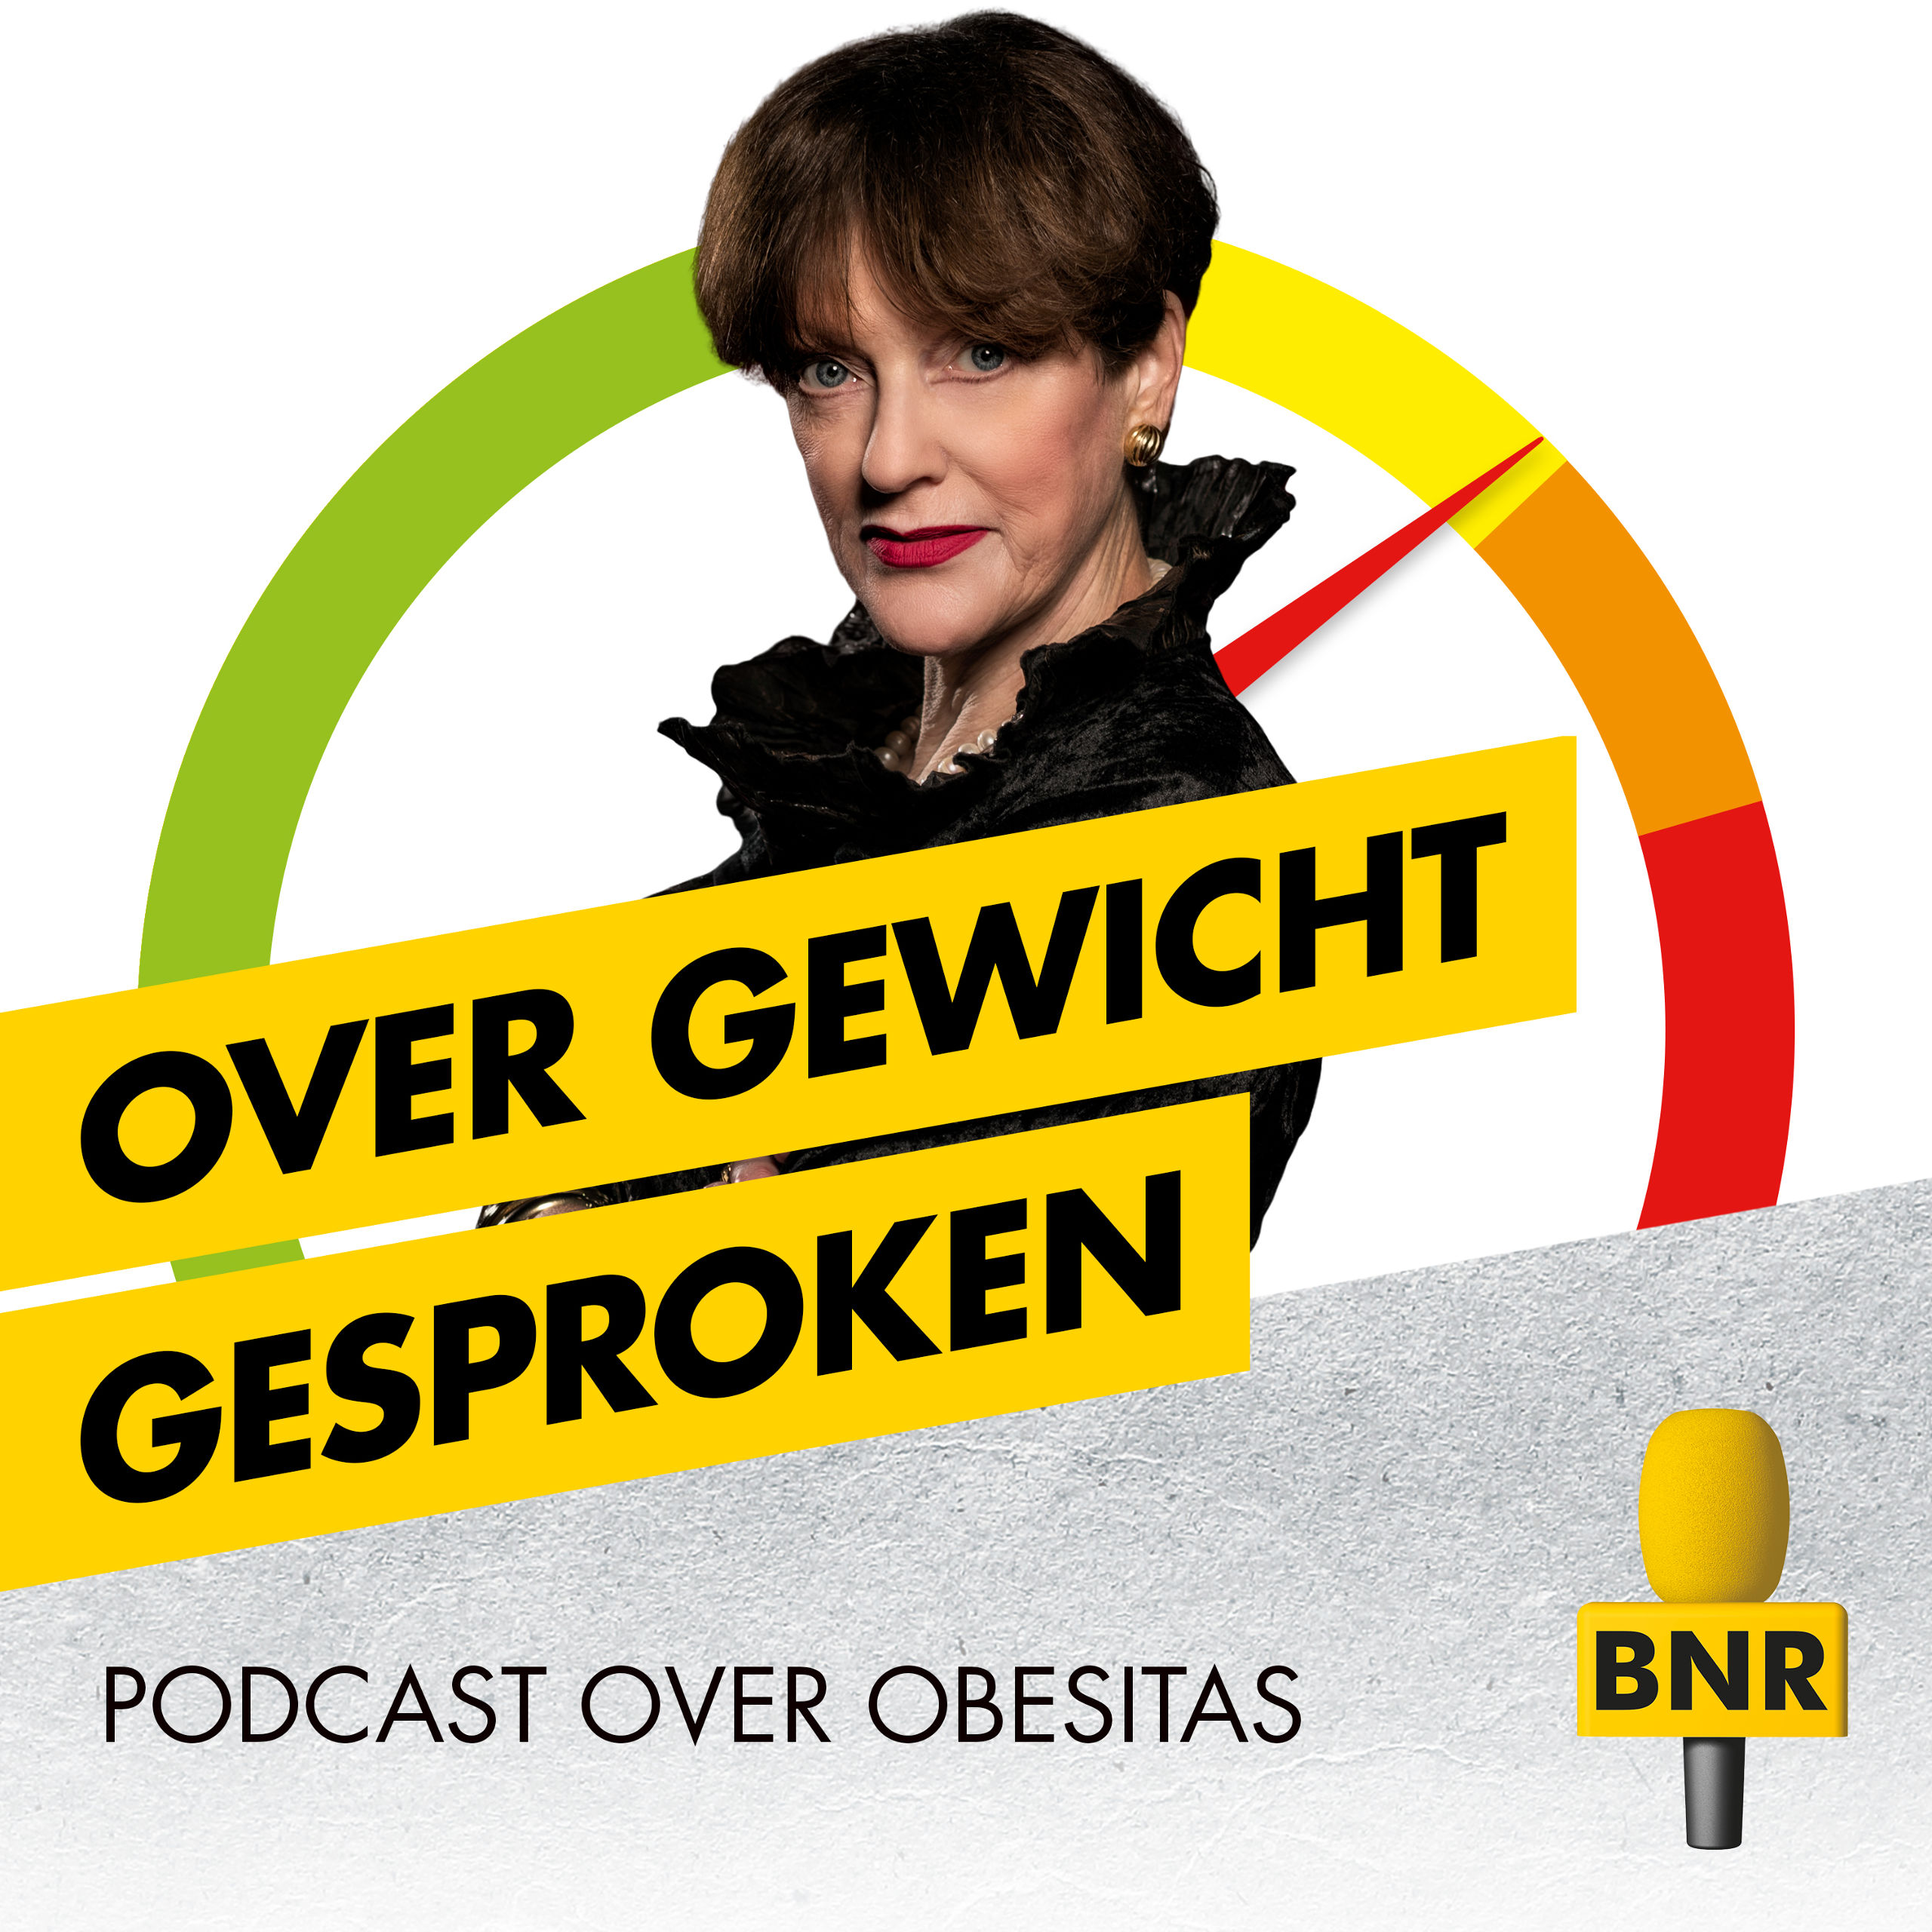 Over Gewicht Gesproke, de podcast over obesitas